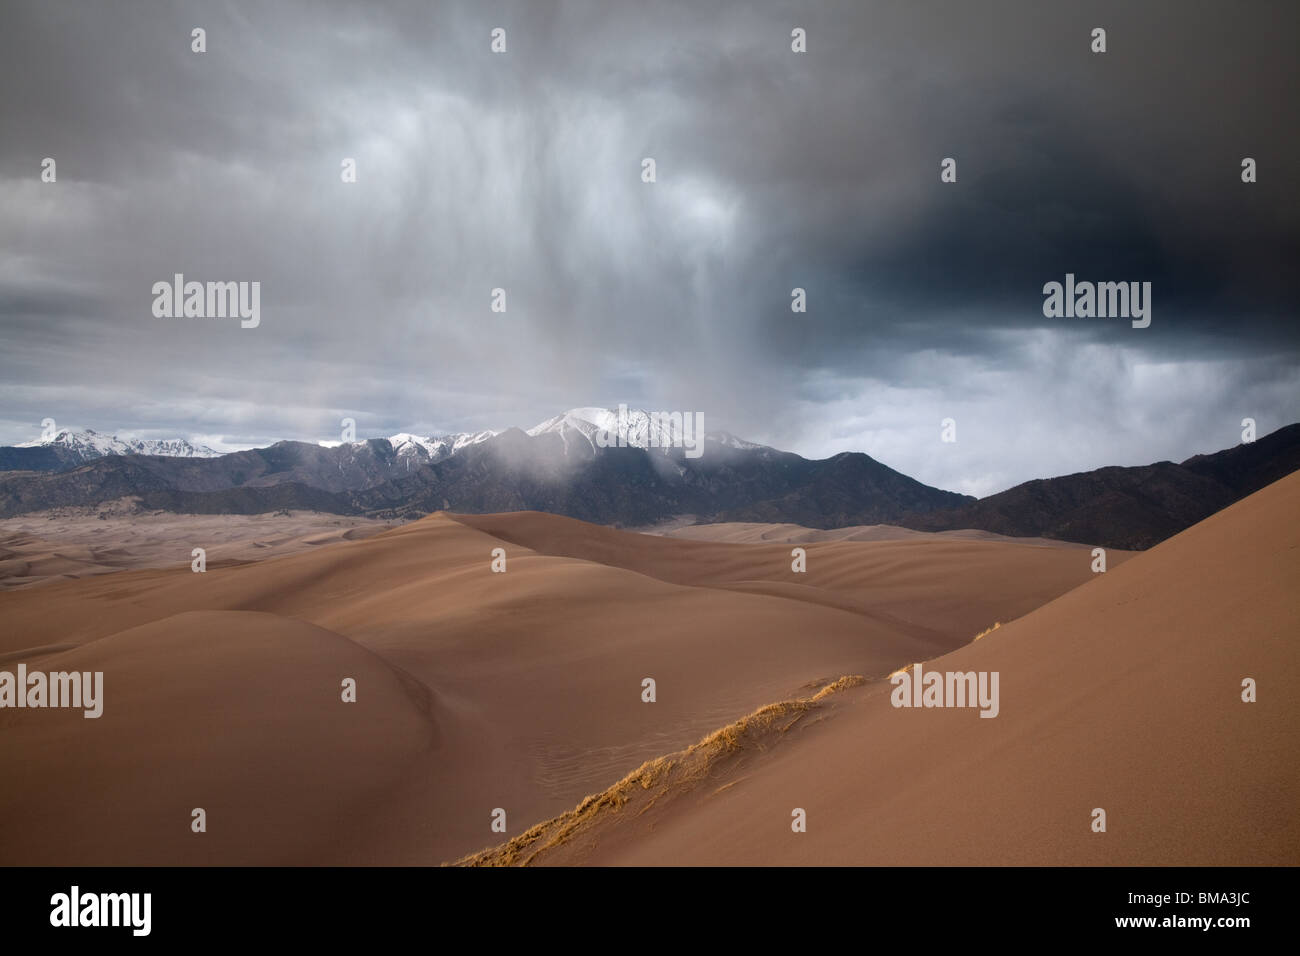 Pluie sur dunefield avec montagnes Sangre de Cristo, Great Sand Dunes National Park, Colorado Banque D'Images